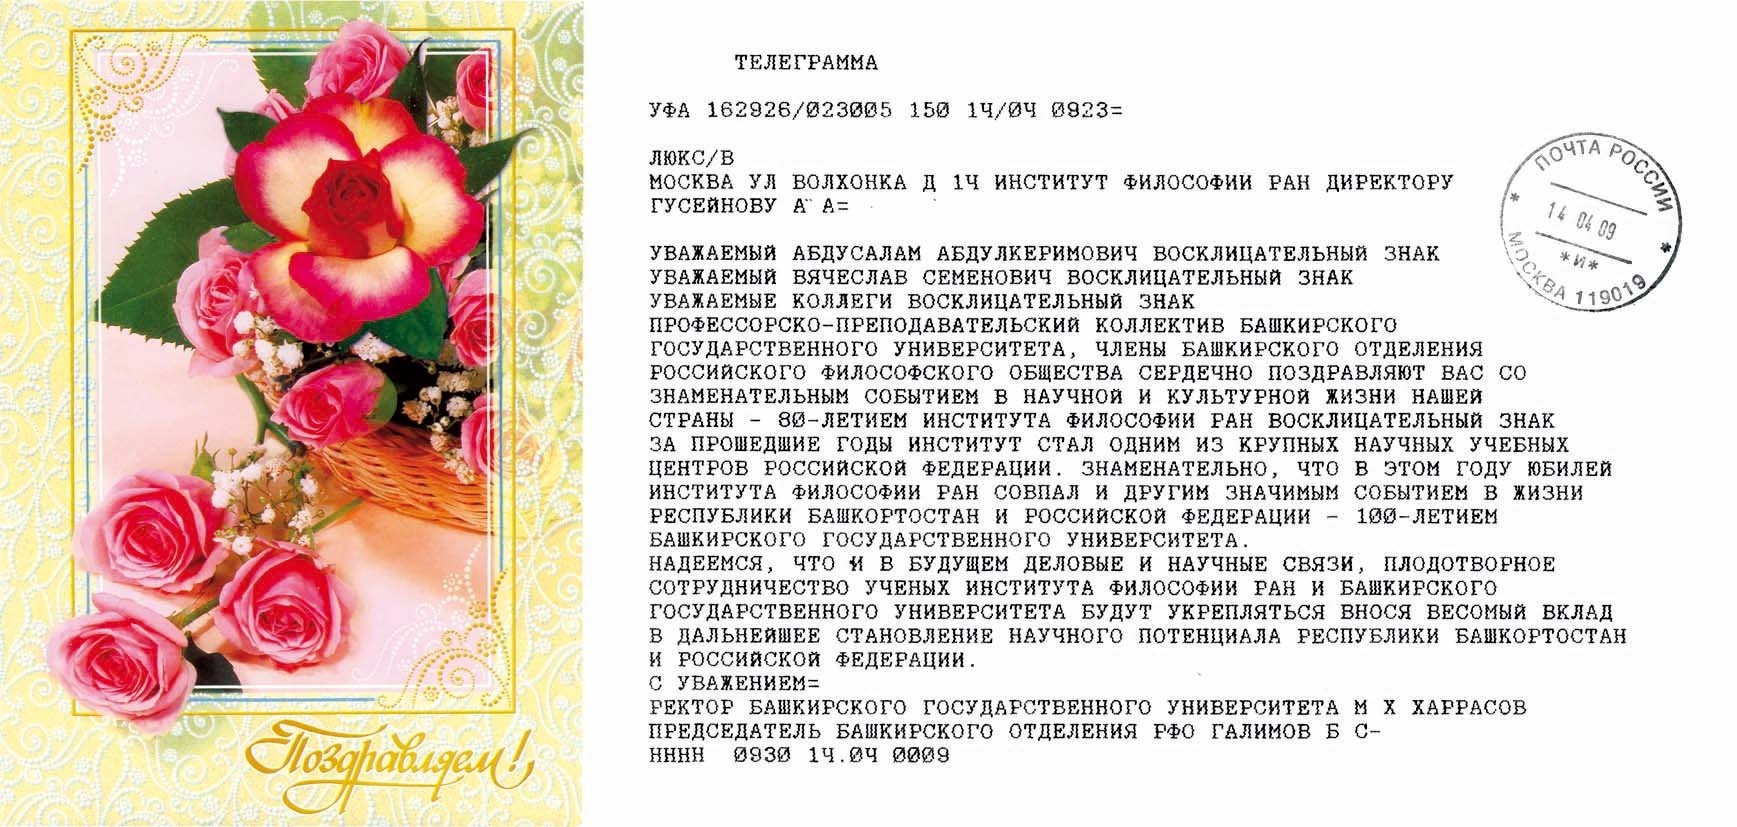 Башкирский язык как государственный язык Республики Башкортостан